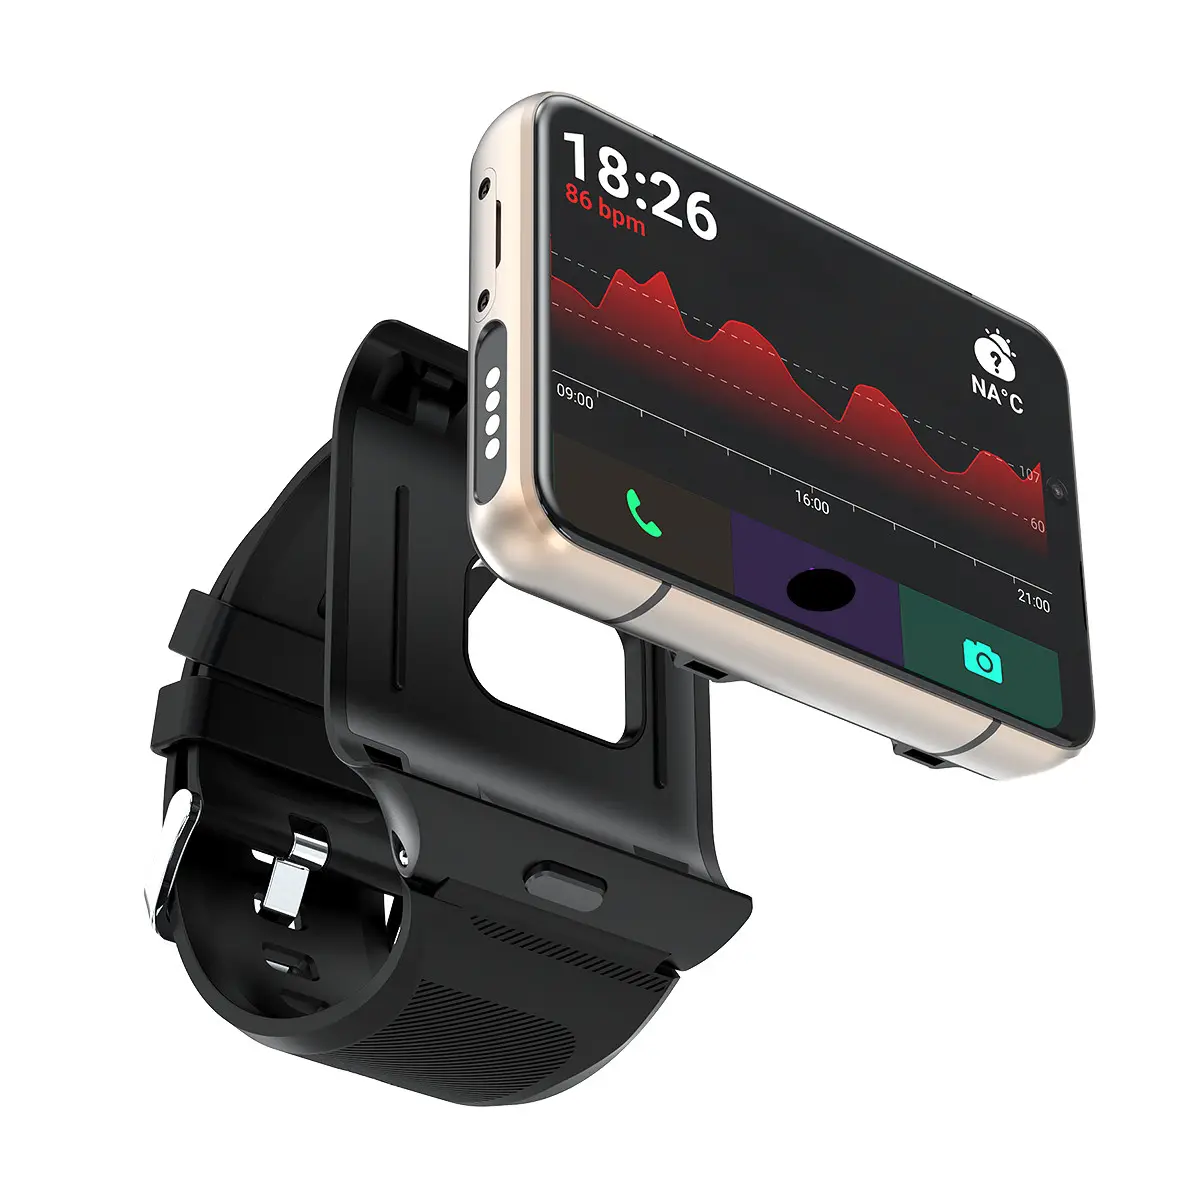 OEM S999 jam tangan pintar, kamera ganda 2300mah baterai 2.88 inci hd layar besar kartu SIM pintar 4g jam tangan telepon untuk android smart watch